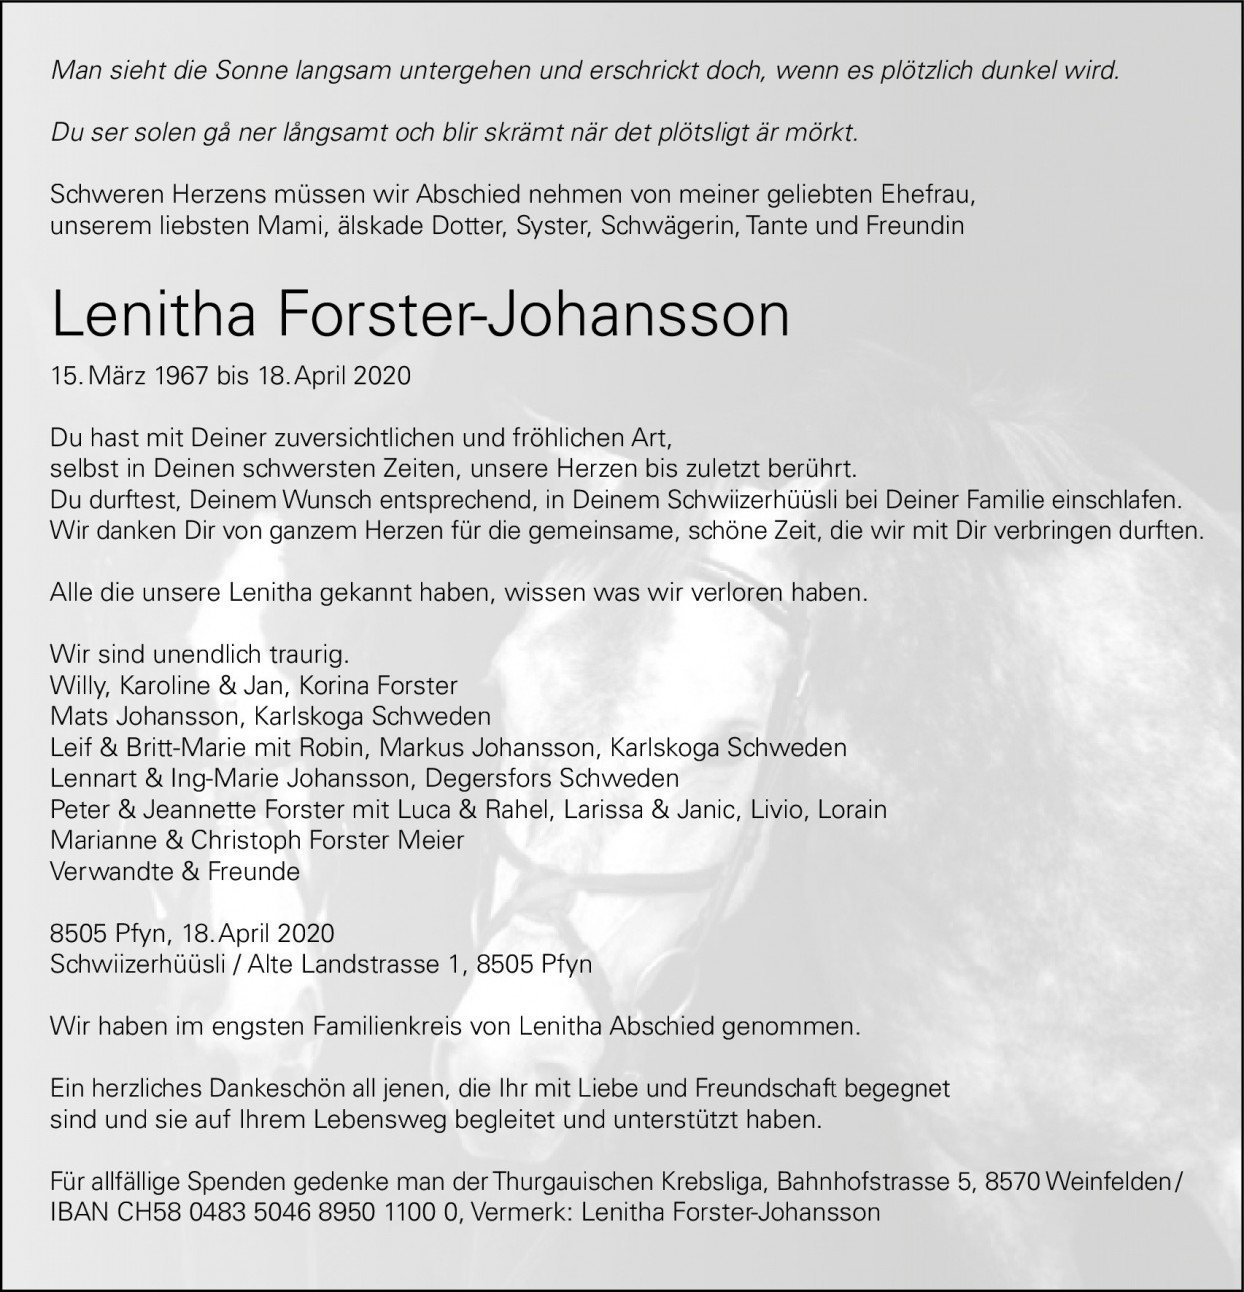 Lenitha Forster-Johansson